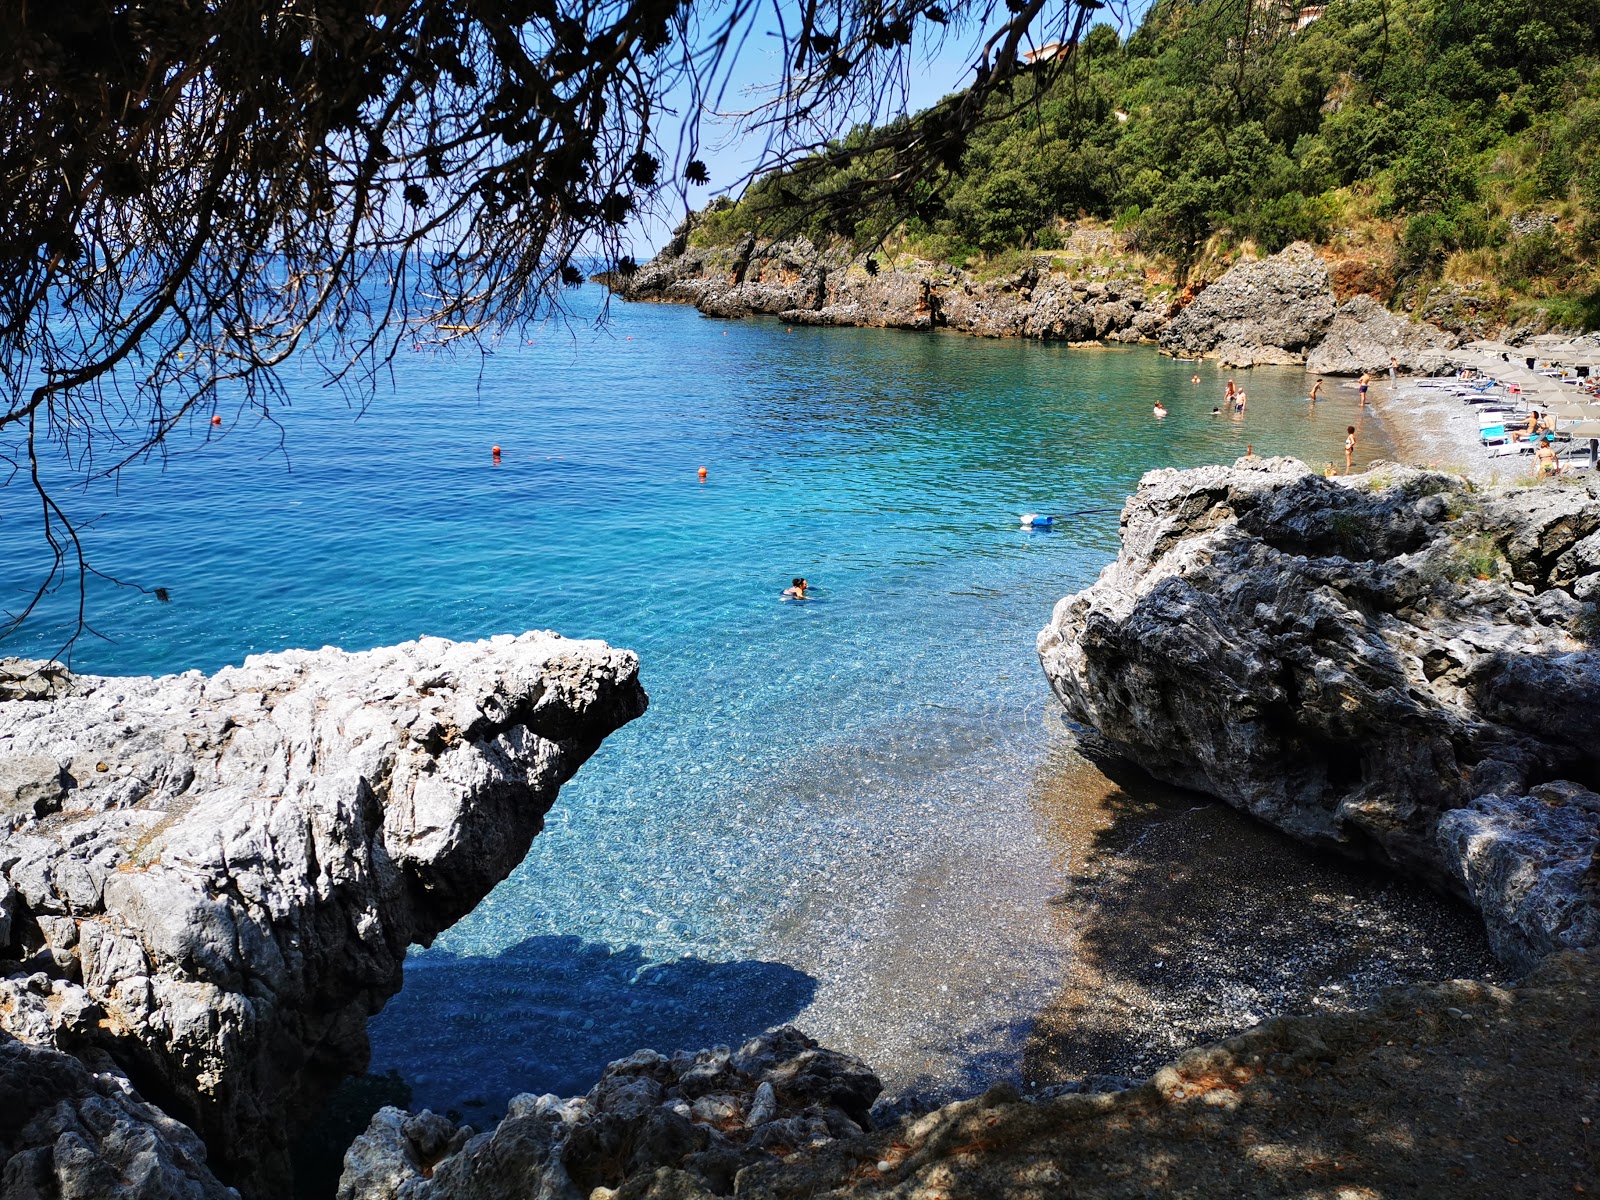 Spiaggia Portacquafridda'in fotoğrafı gri ince çakıl taş yüzey ile